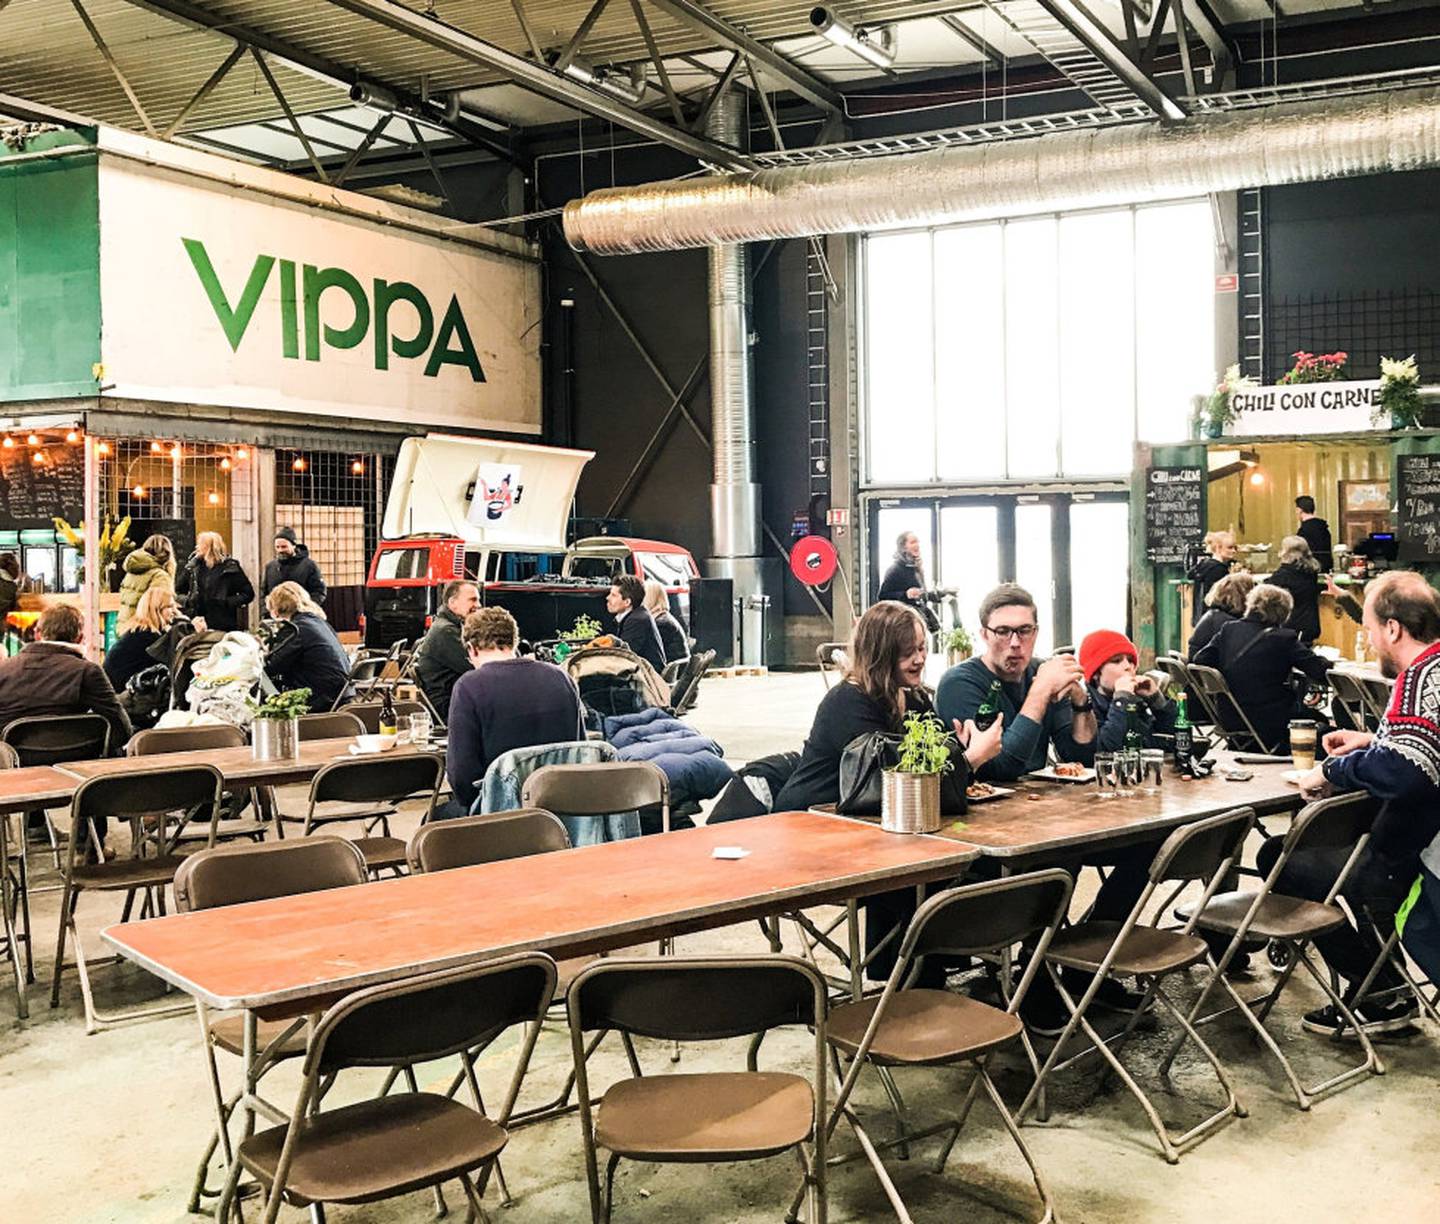 Vippa heter den nye mathallen på Vippetangen i Oslo, et havneskur omgjort til gatematparadis og kulturåsted med konserter, foredrag eller rett og slett bare rekreasjon for matens og hyggens skyld. 